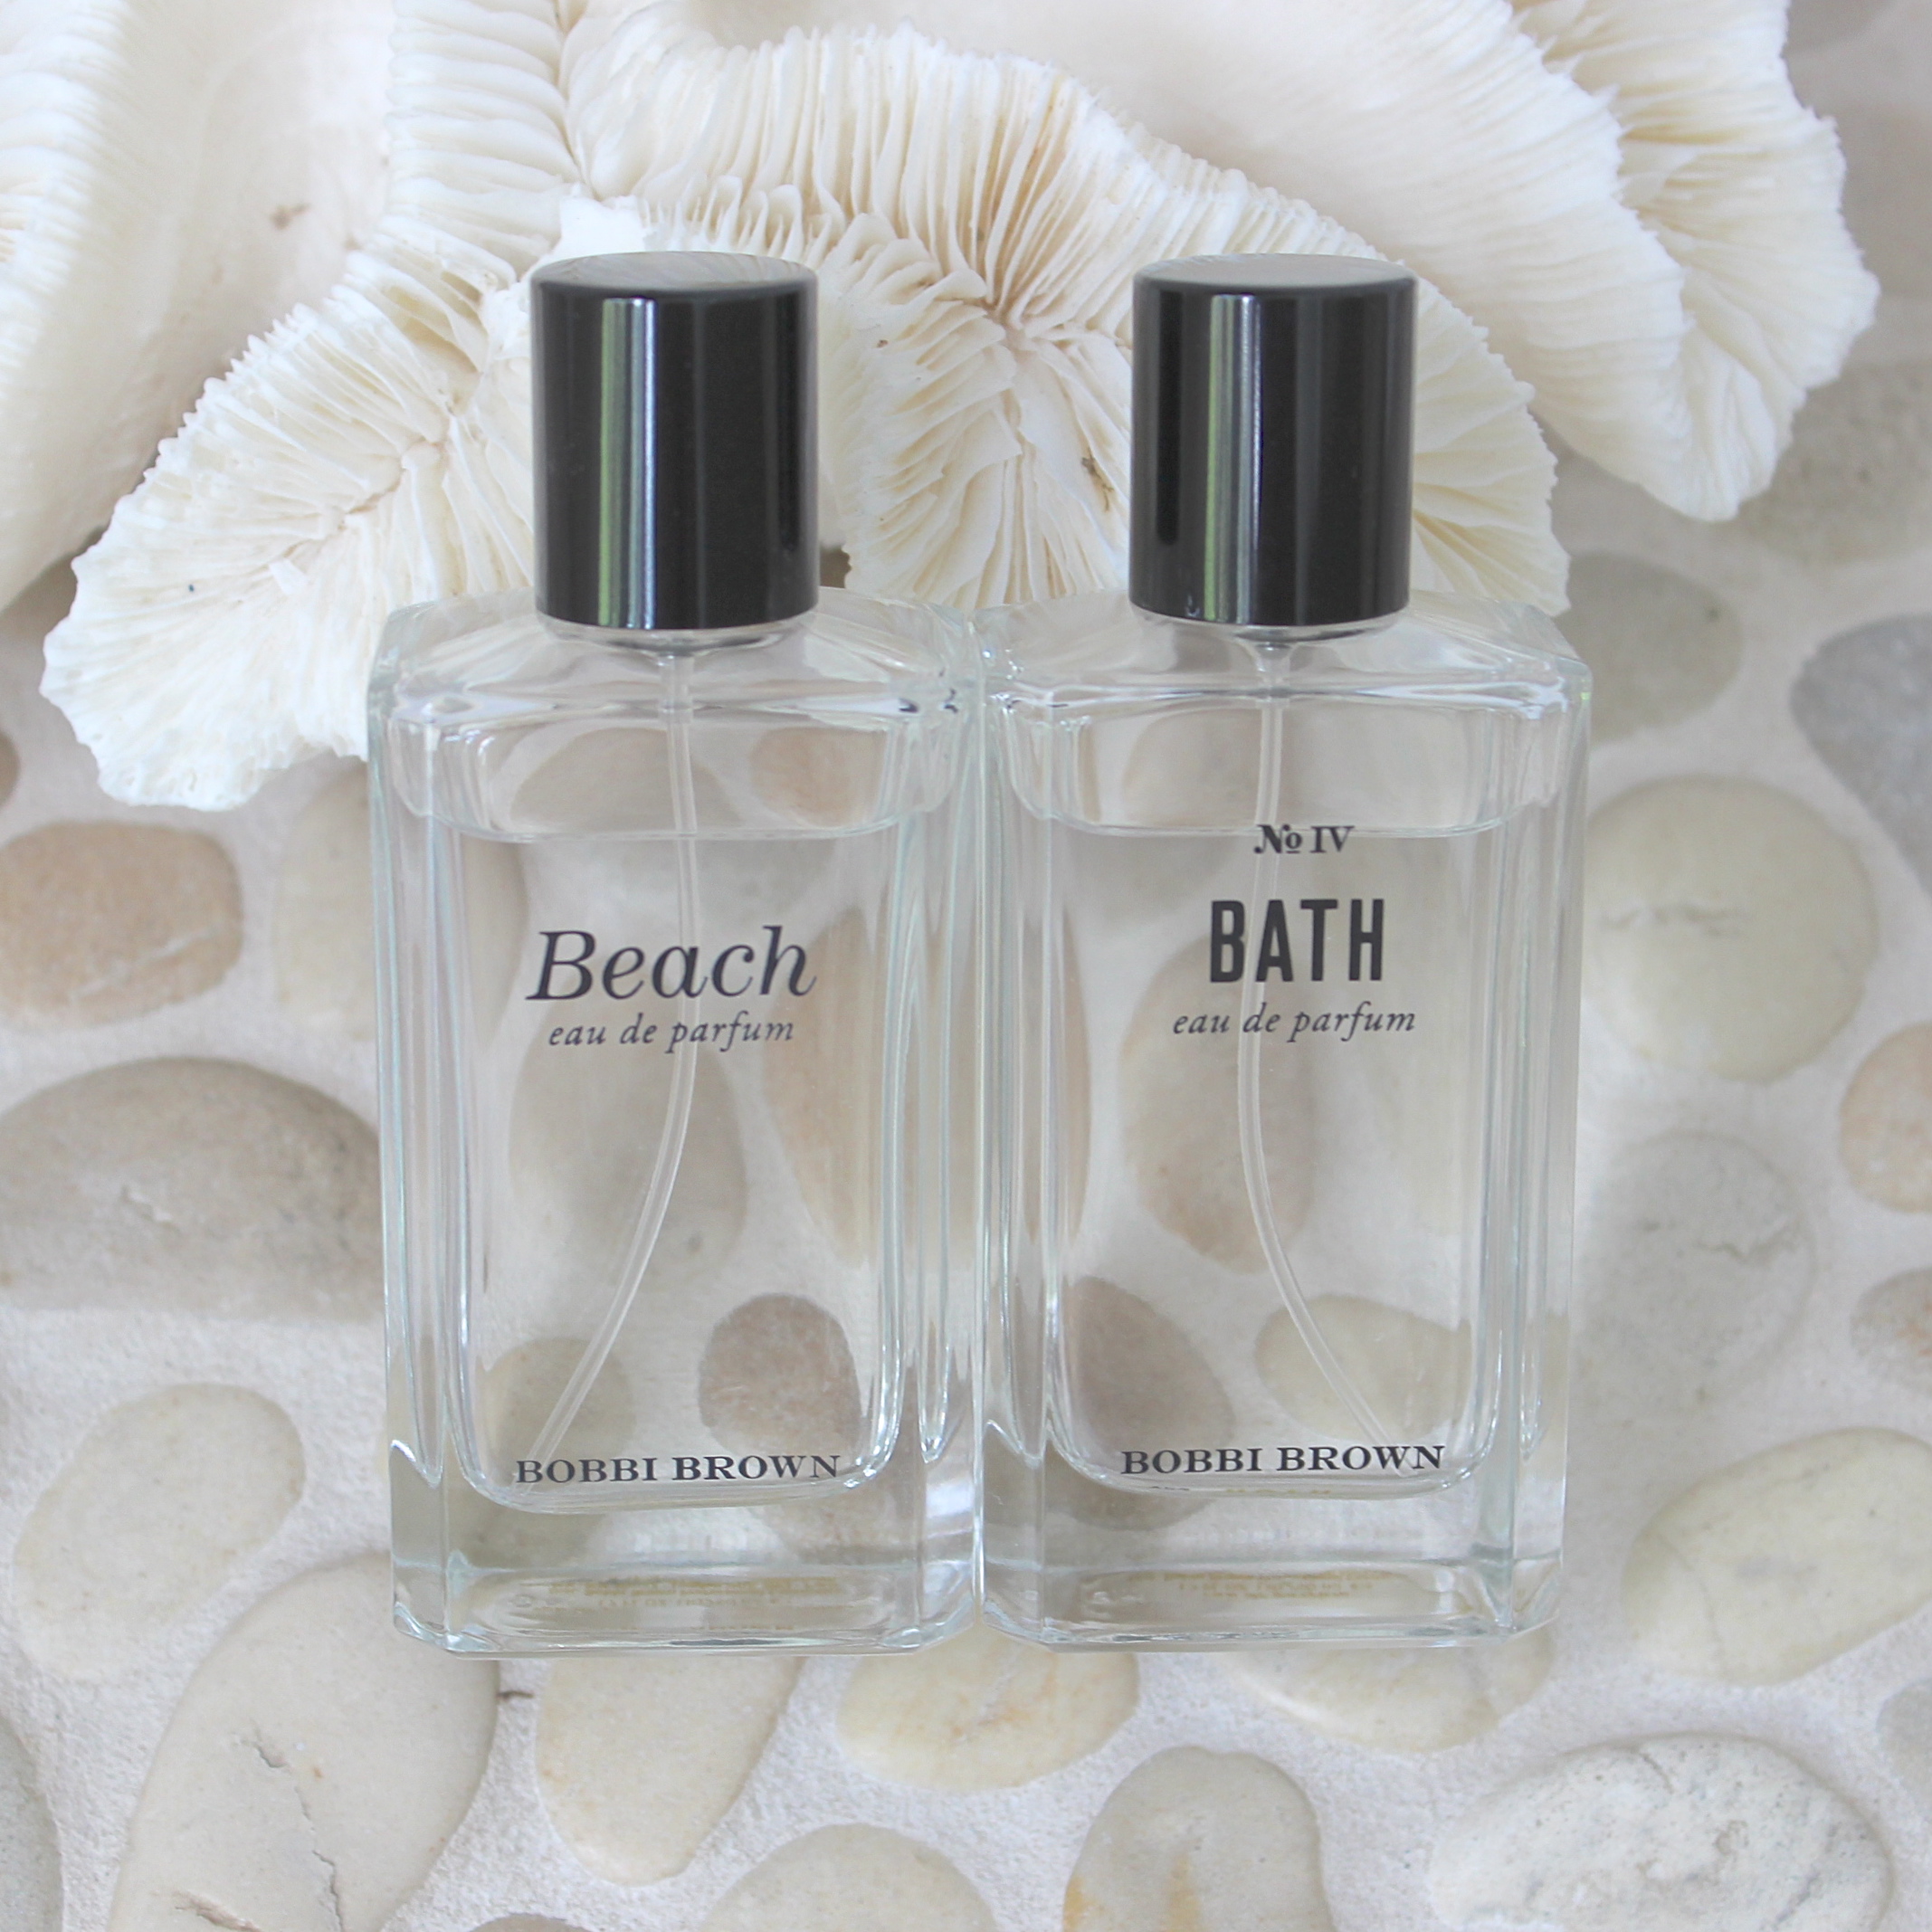 Bobbi Brown Beach and Bath Perfume